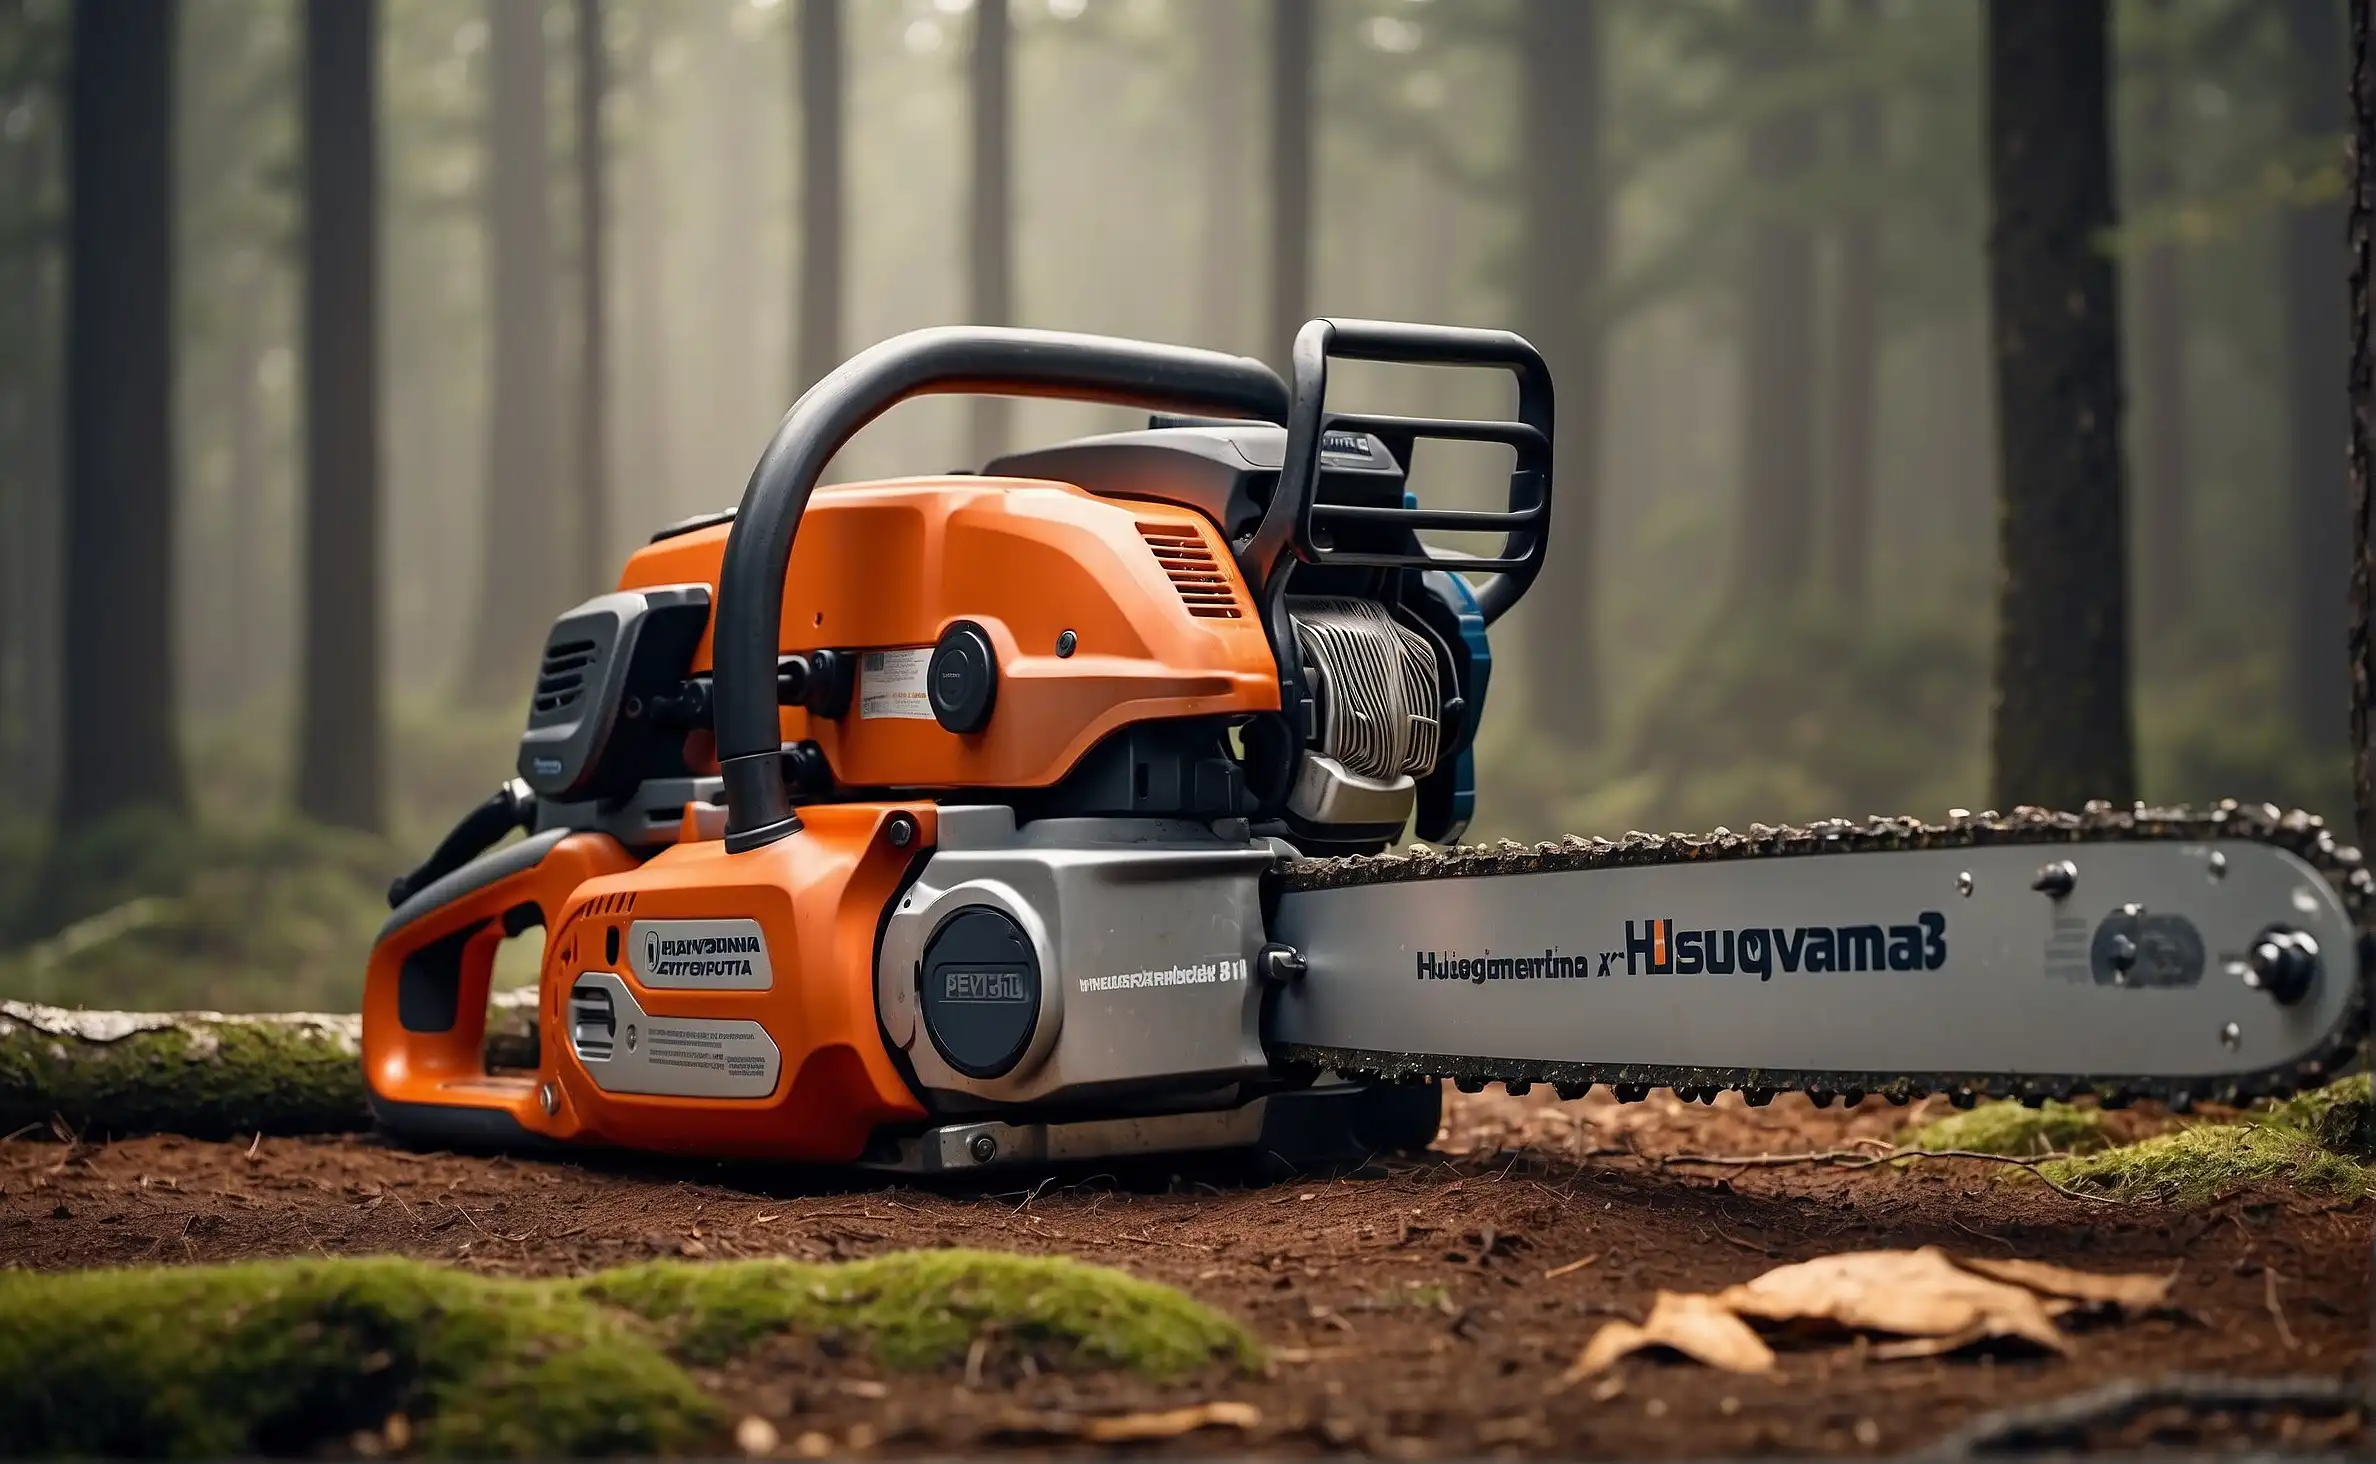 The biggest Husqvarna chainsaw is the Husqvarna 3120 XP